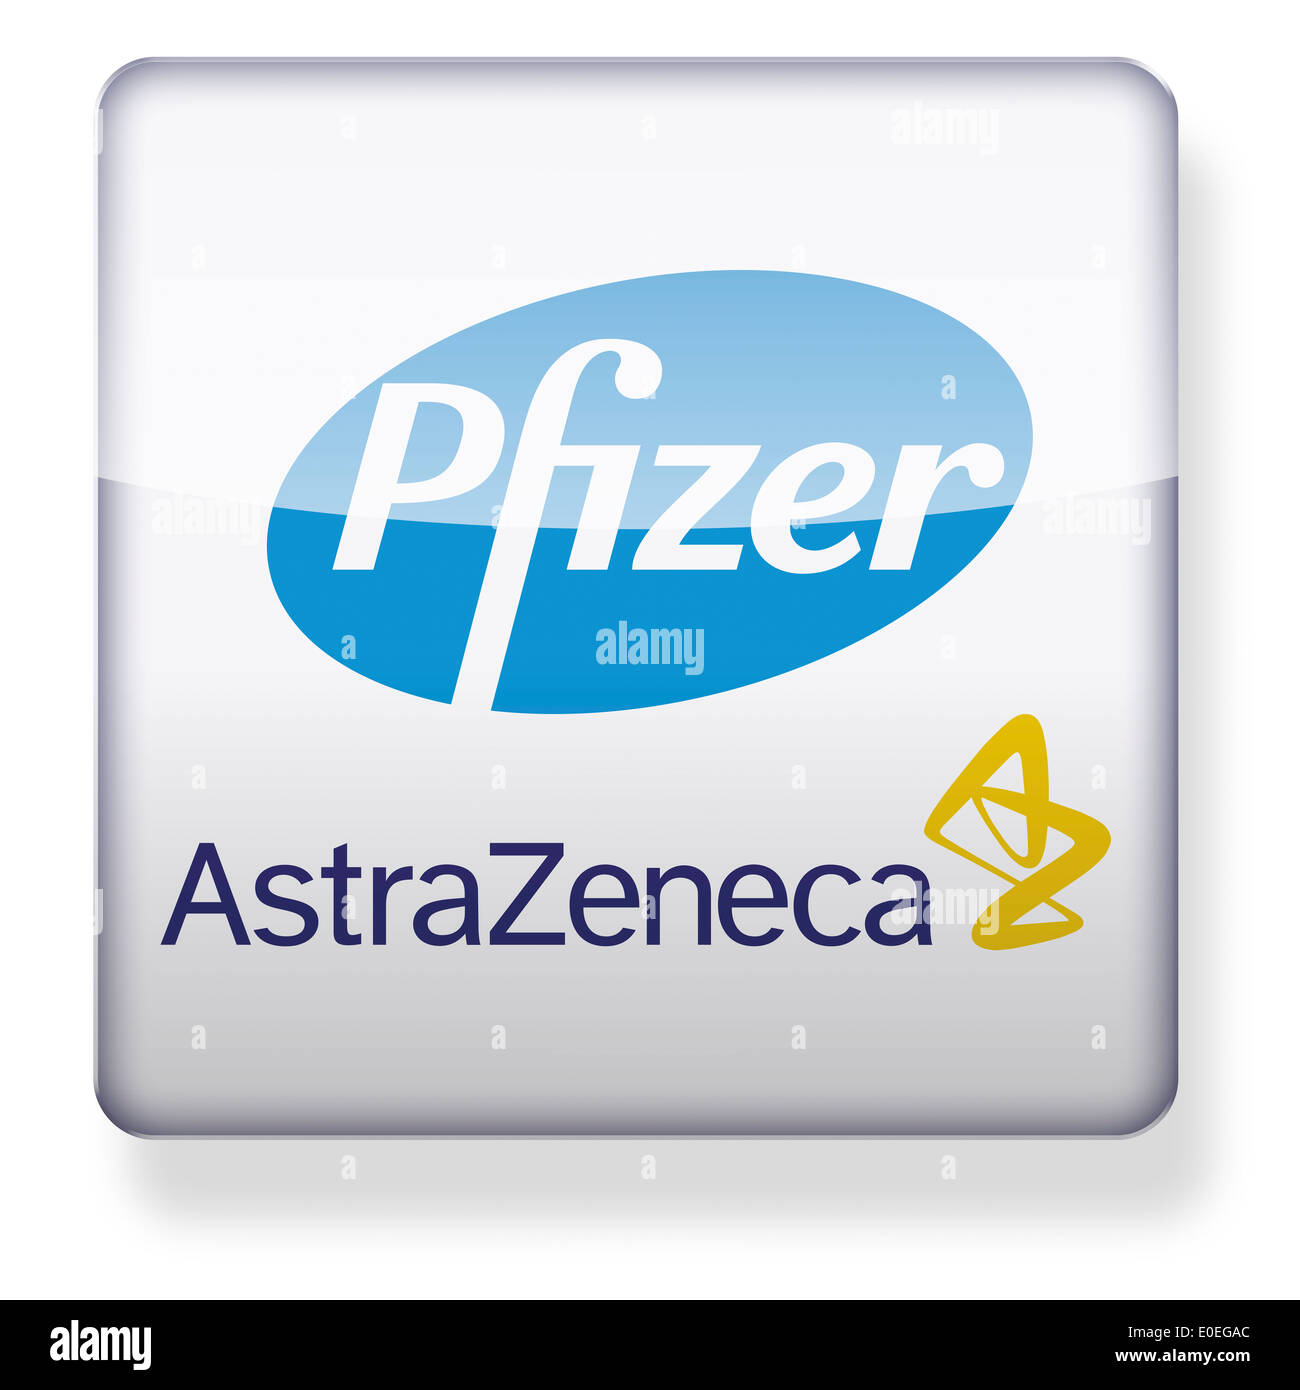 La Pfizer e AstraZeneca logos come l'icona di un'app. Percorso di clipping incluso. Foto Stock